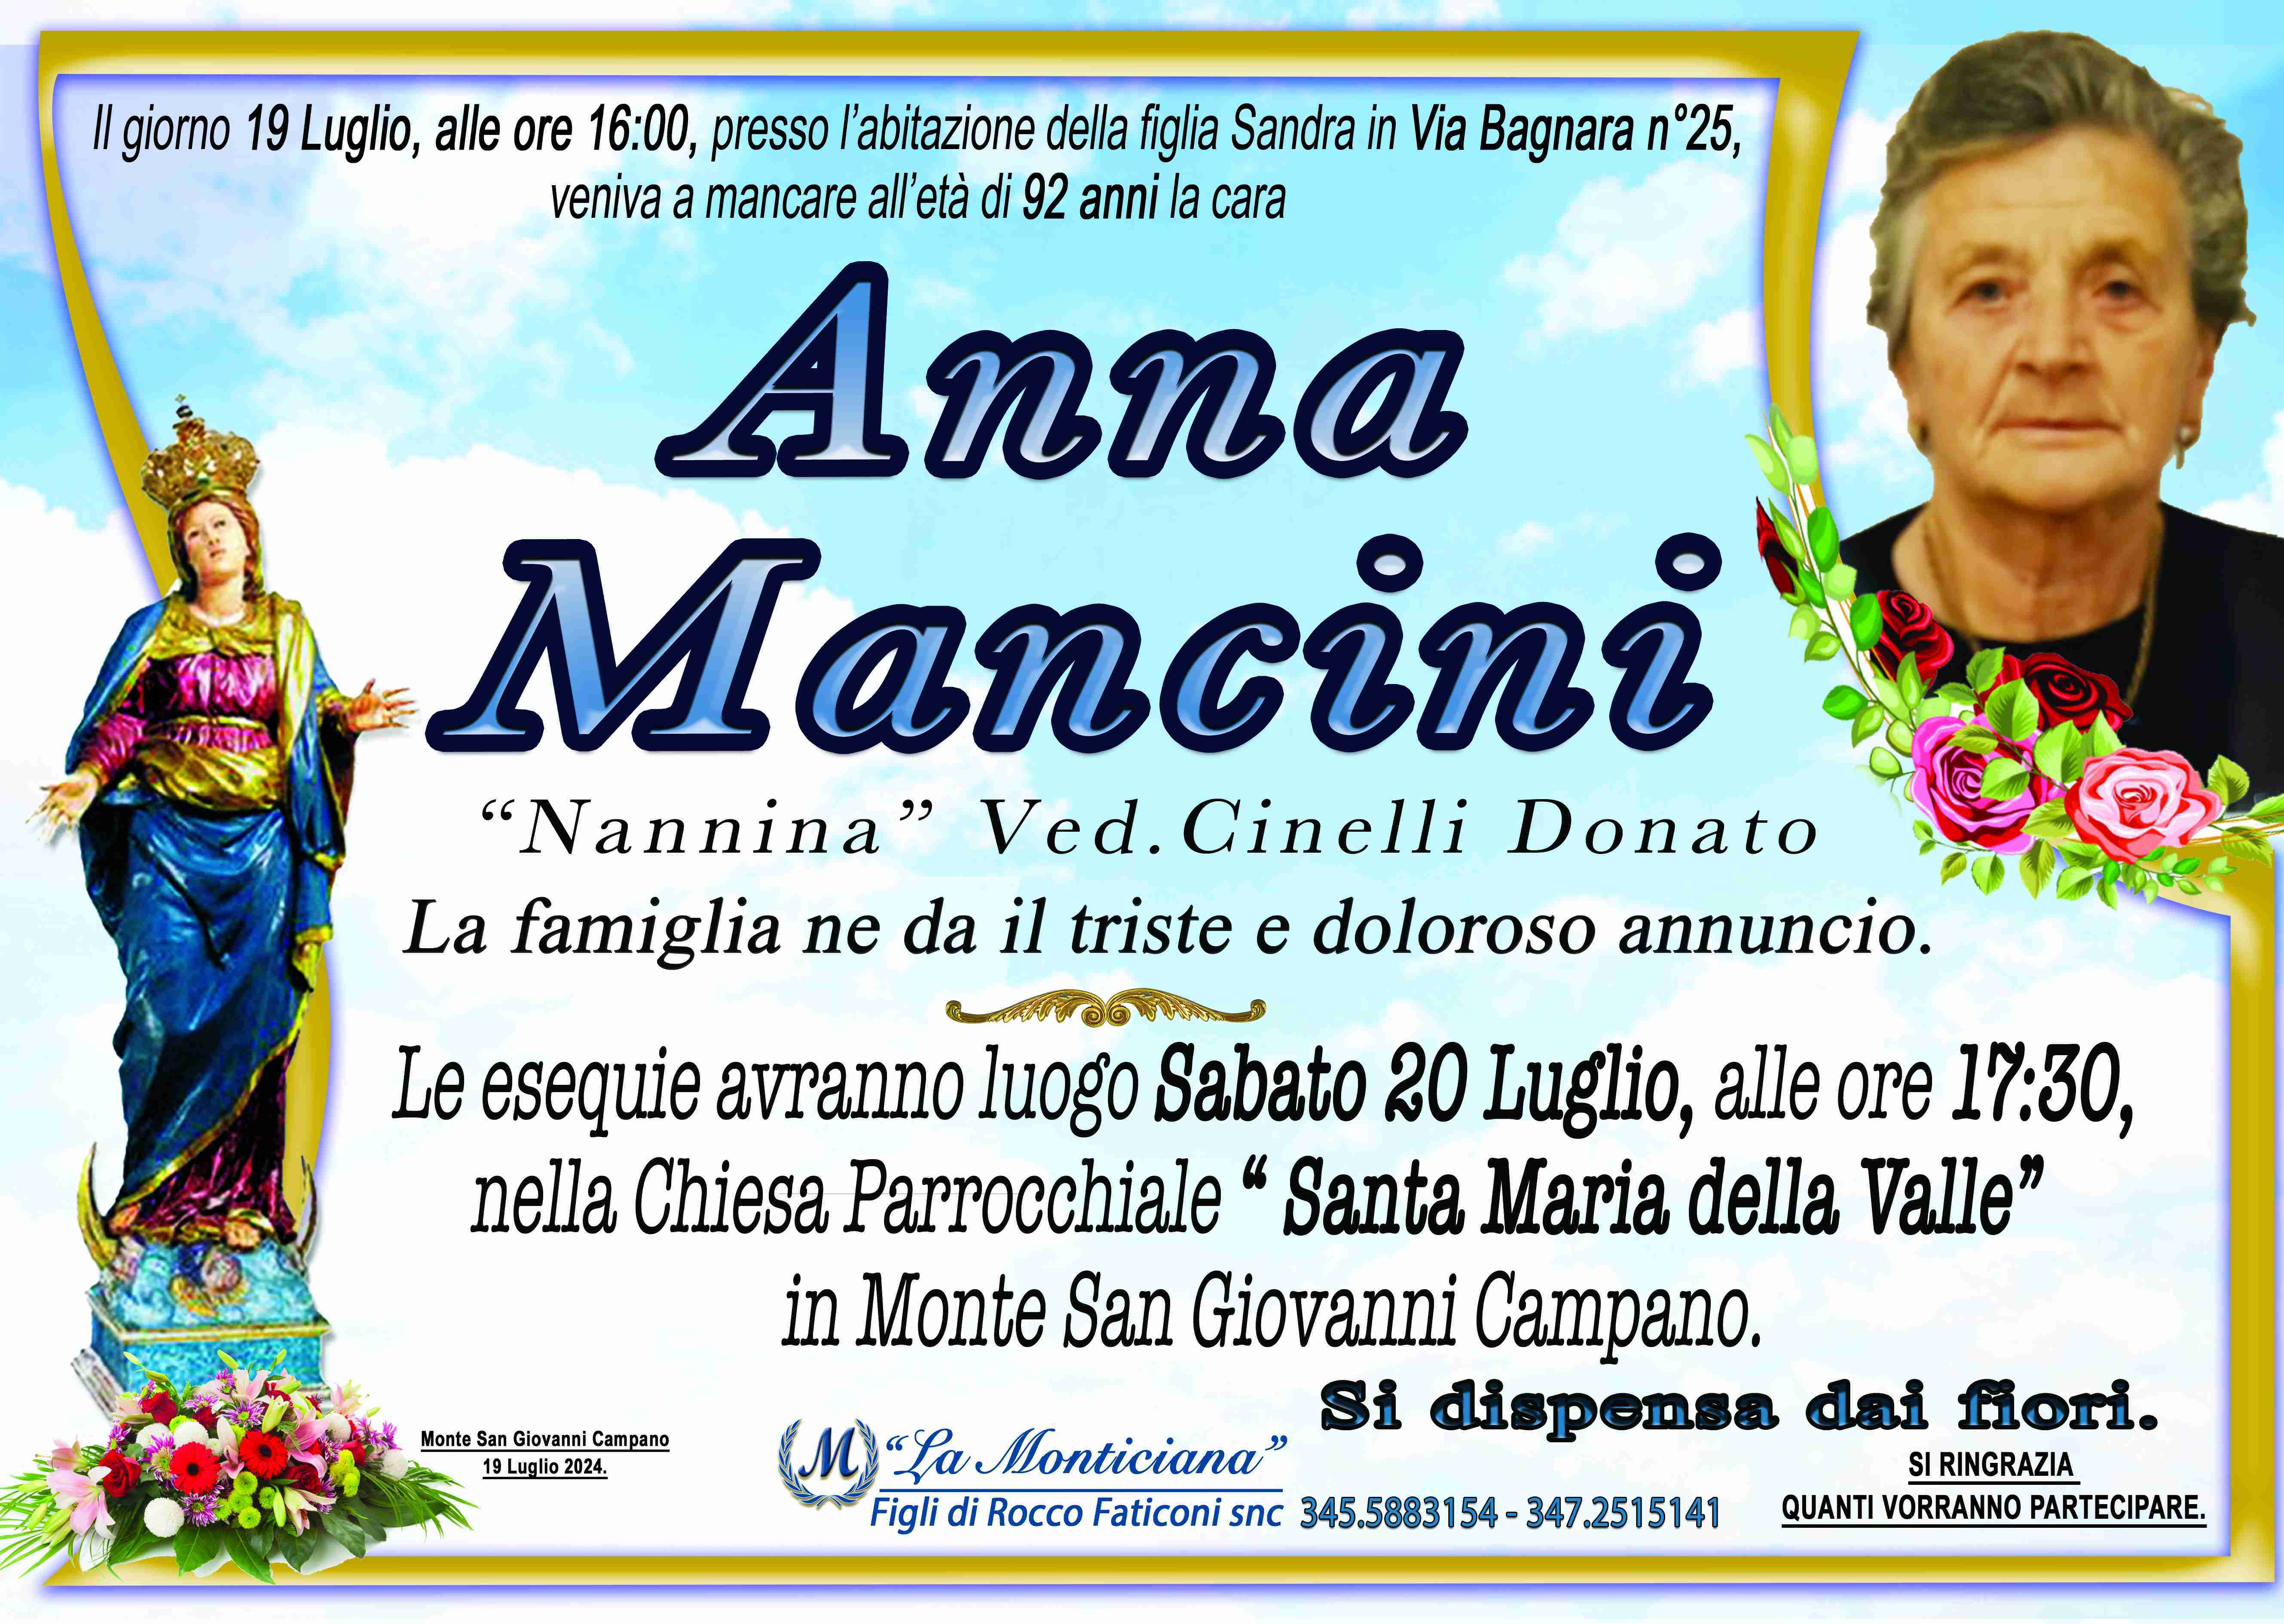 Anna Mancini